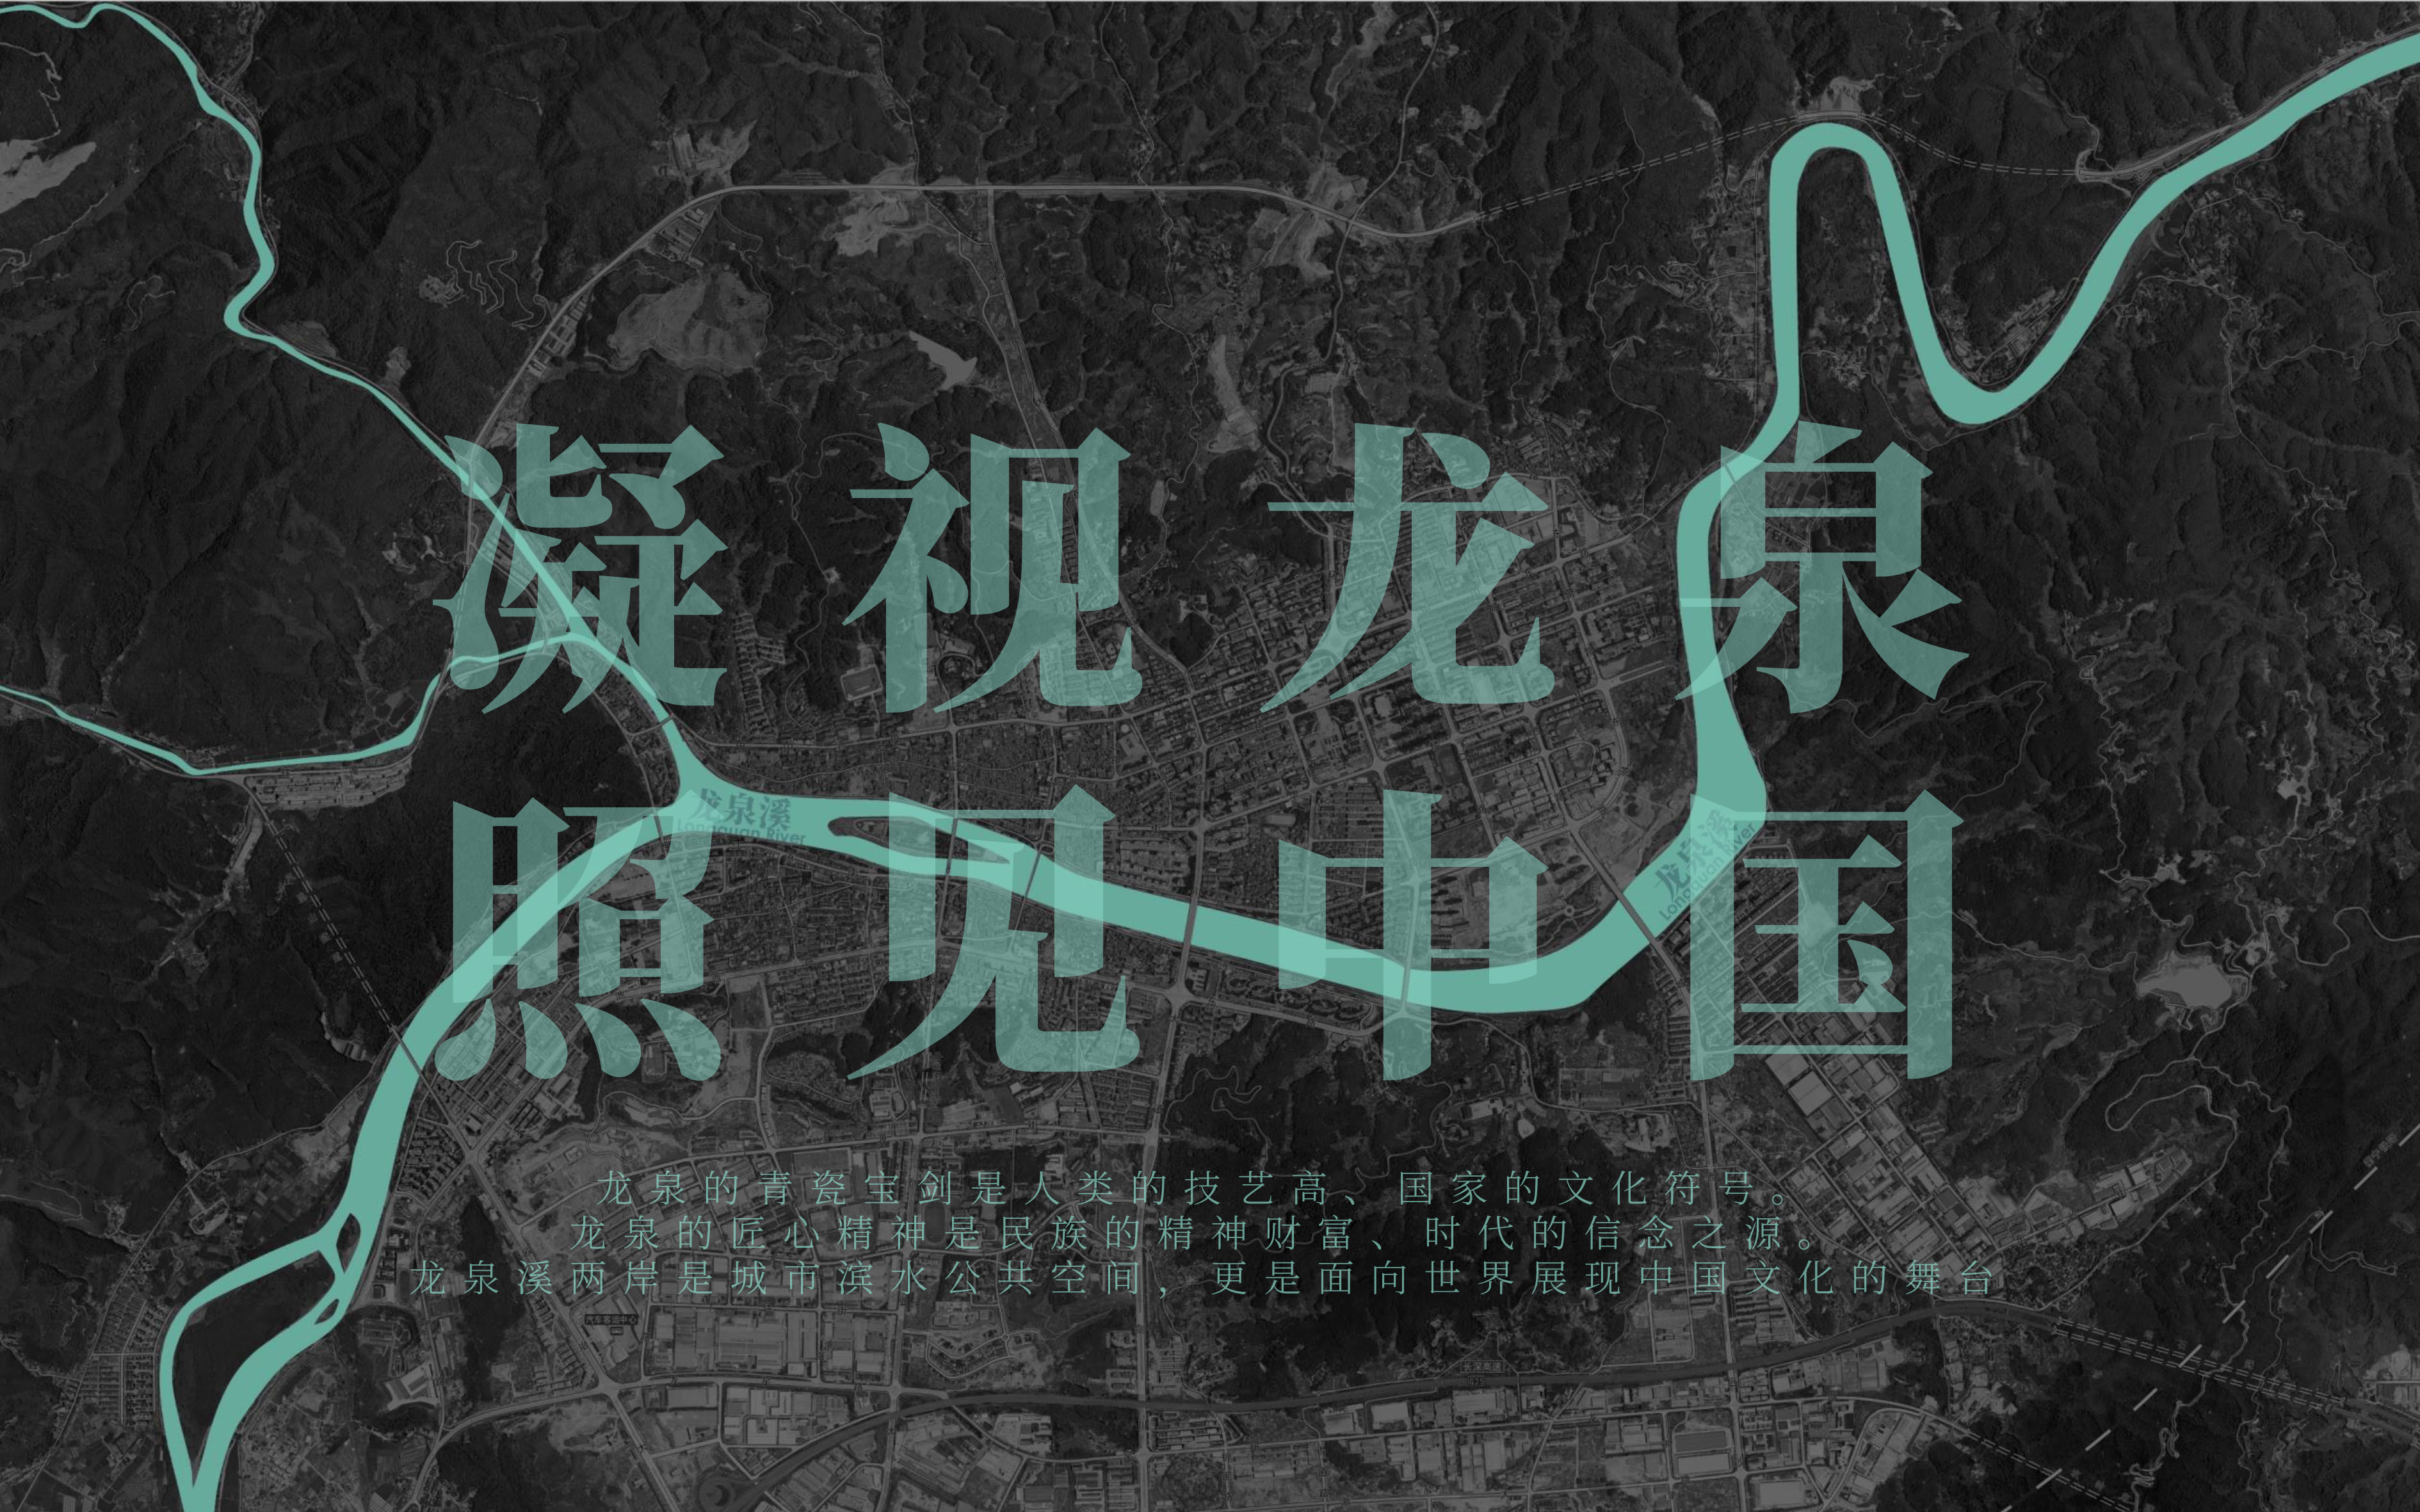 网站图片排版-XINLN-龙泉溪-3.jpg